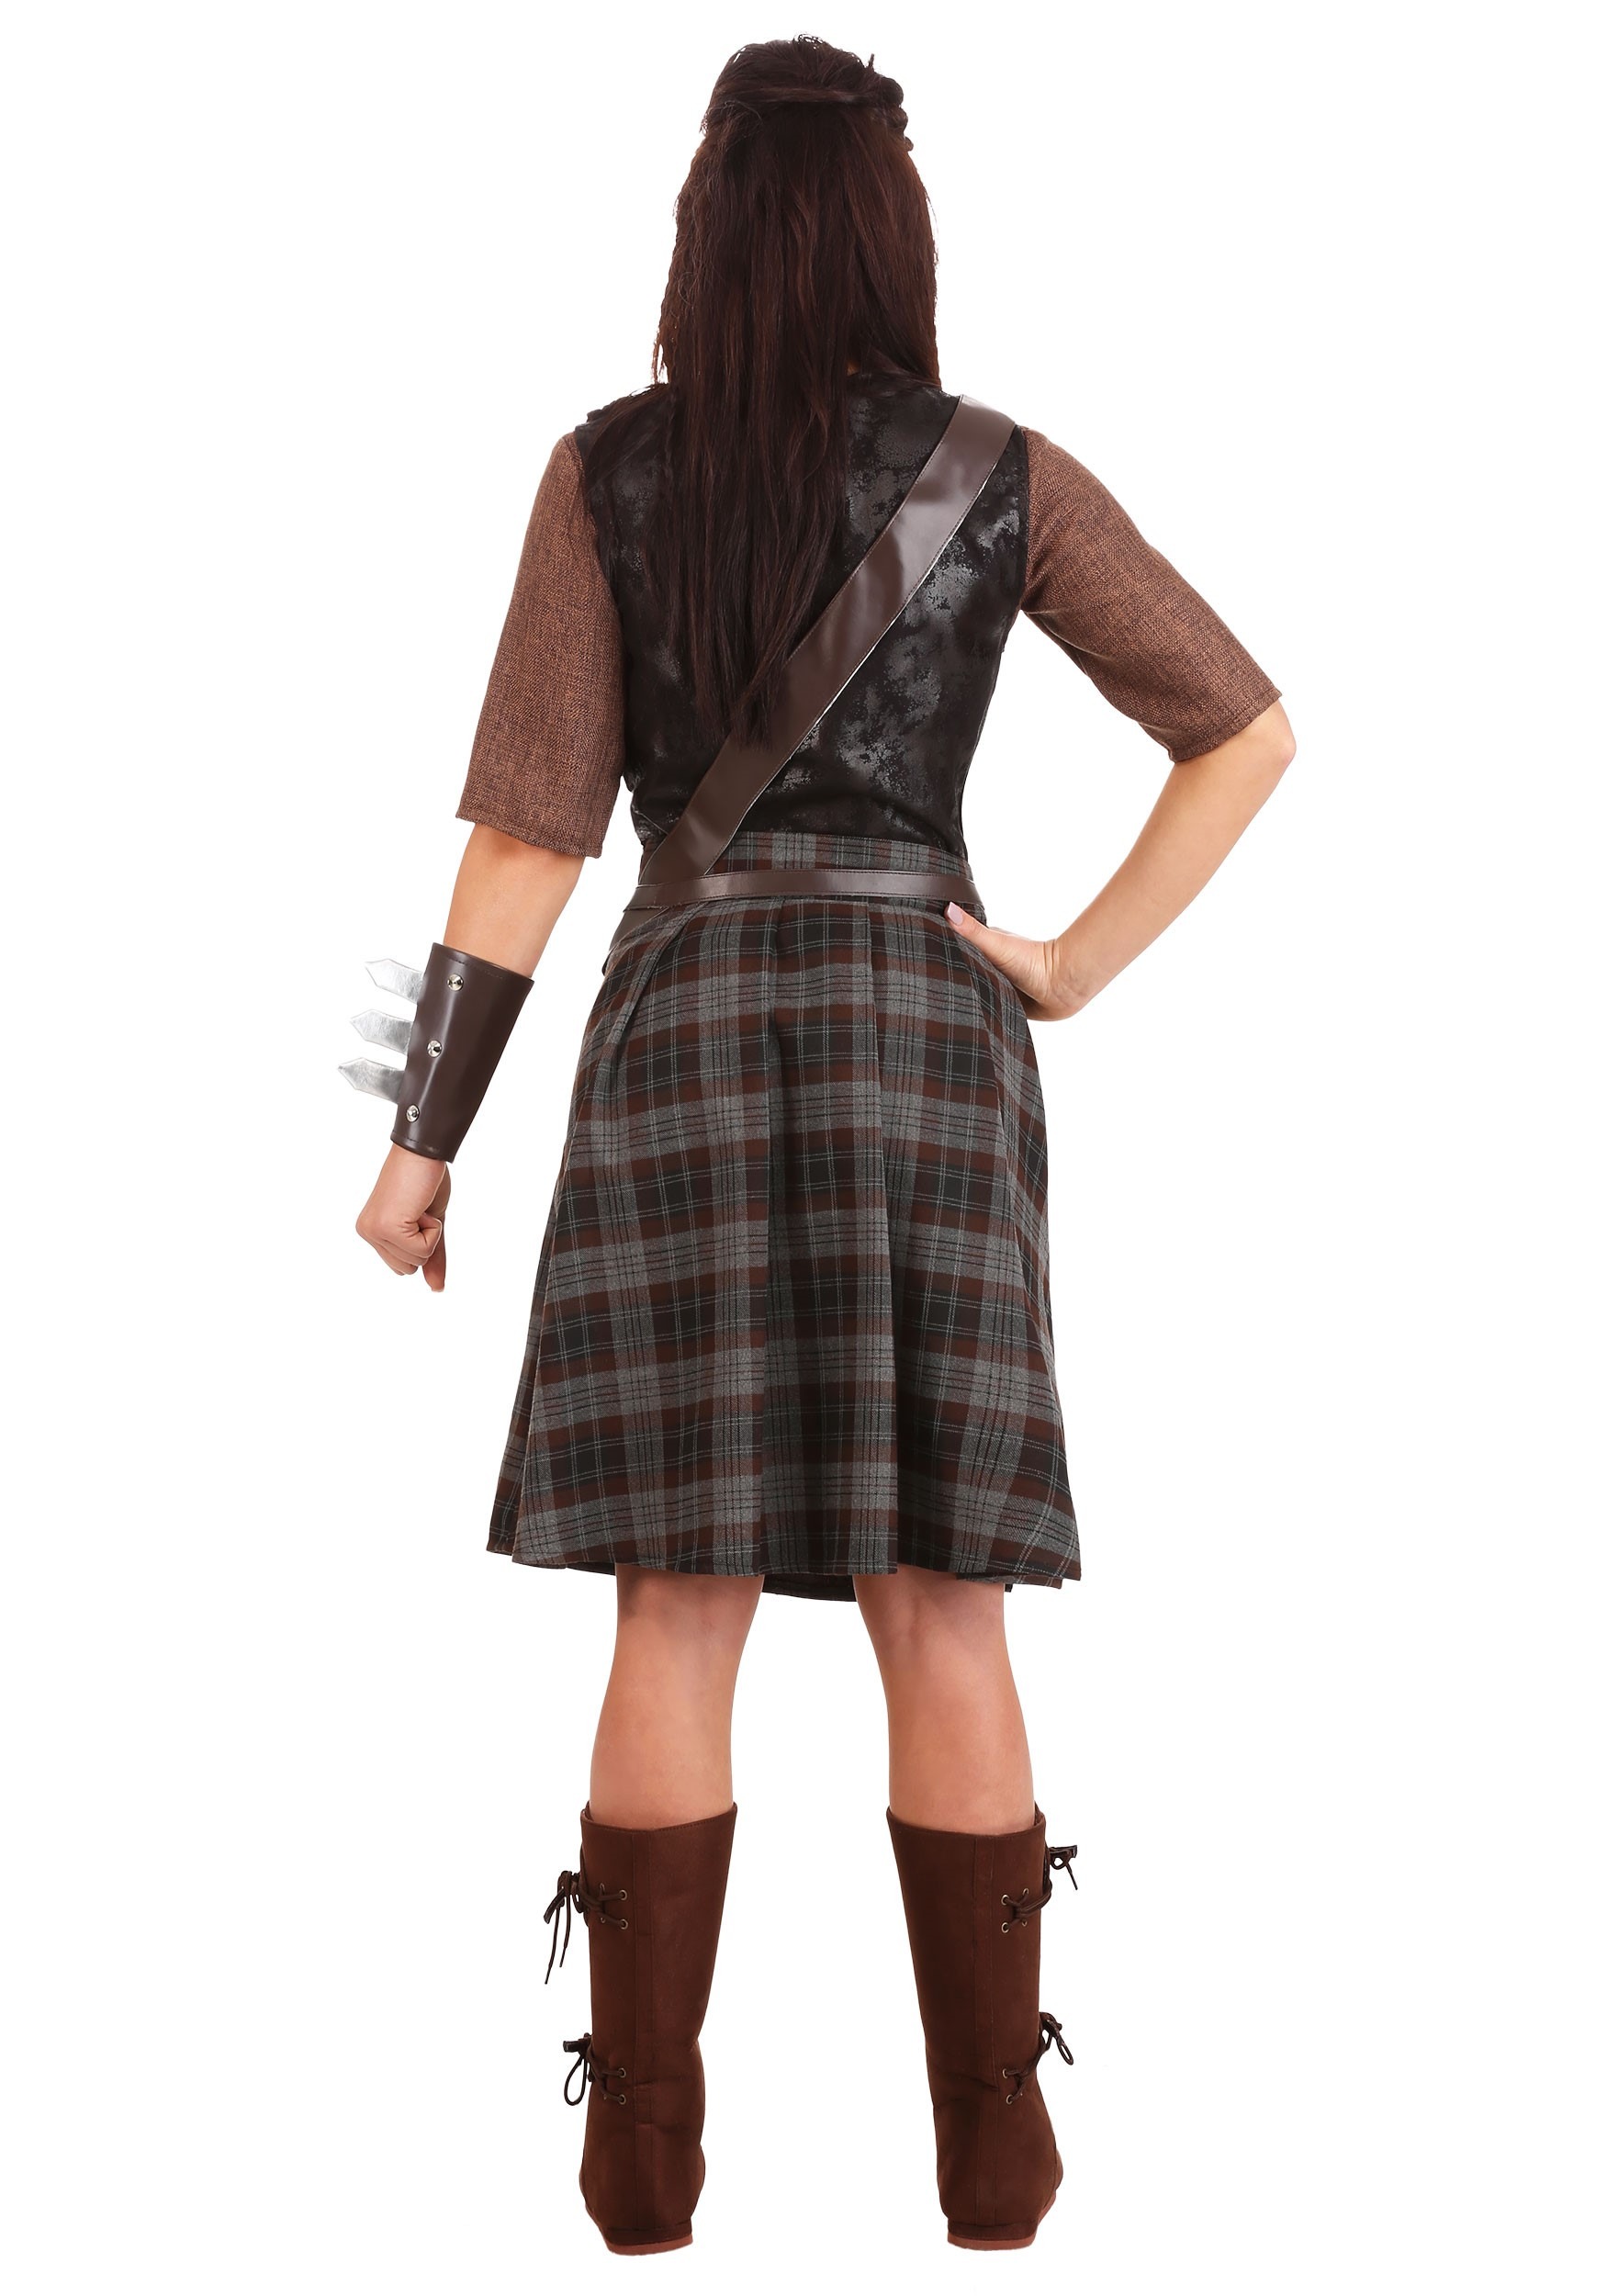 Braveheart Warrior Costume For Women